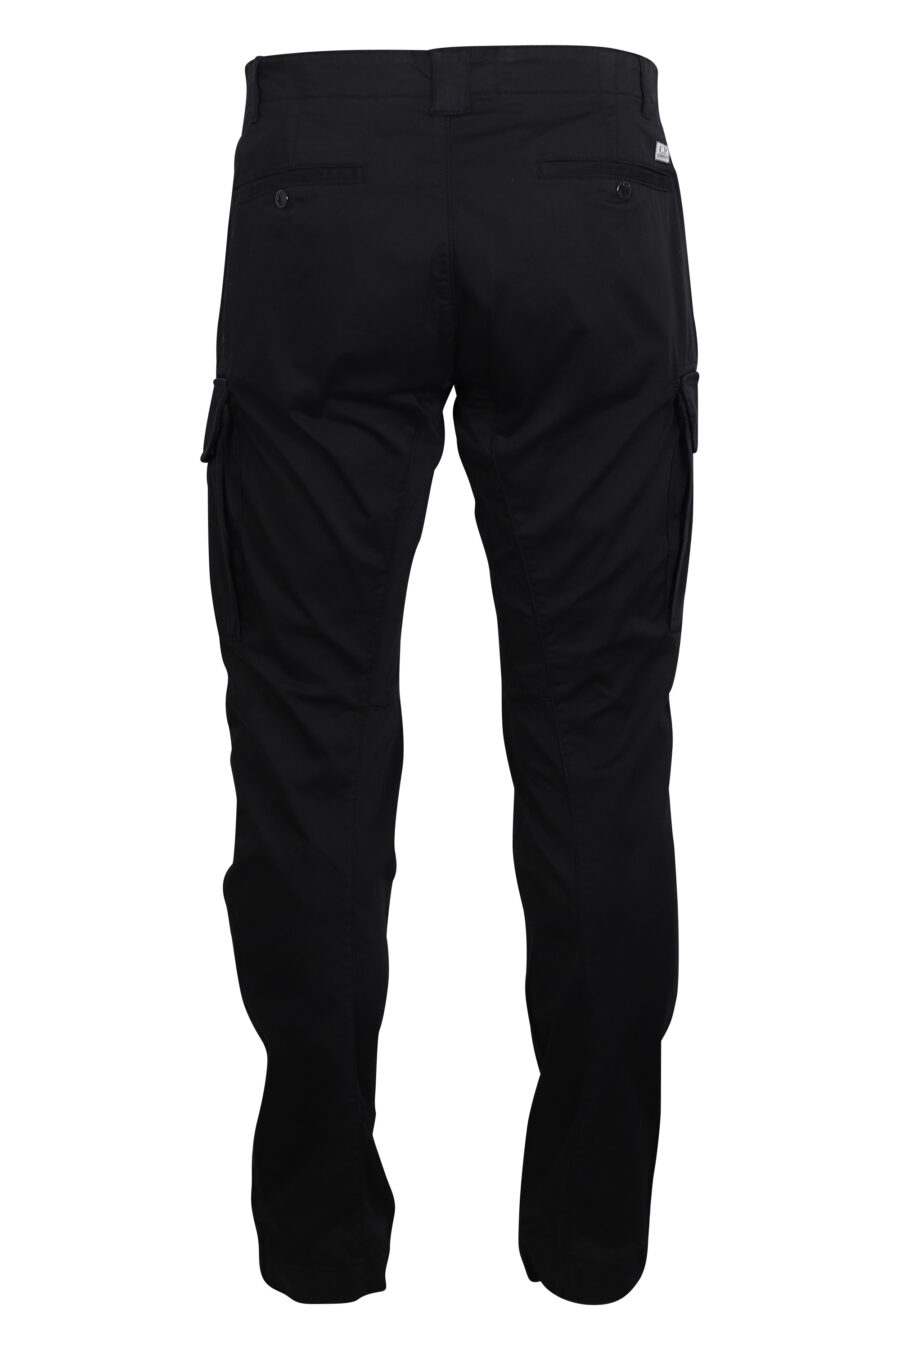 Pantalon cargo noir avec mini-logo circulaire - IMG 2470 1